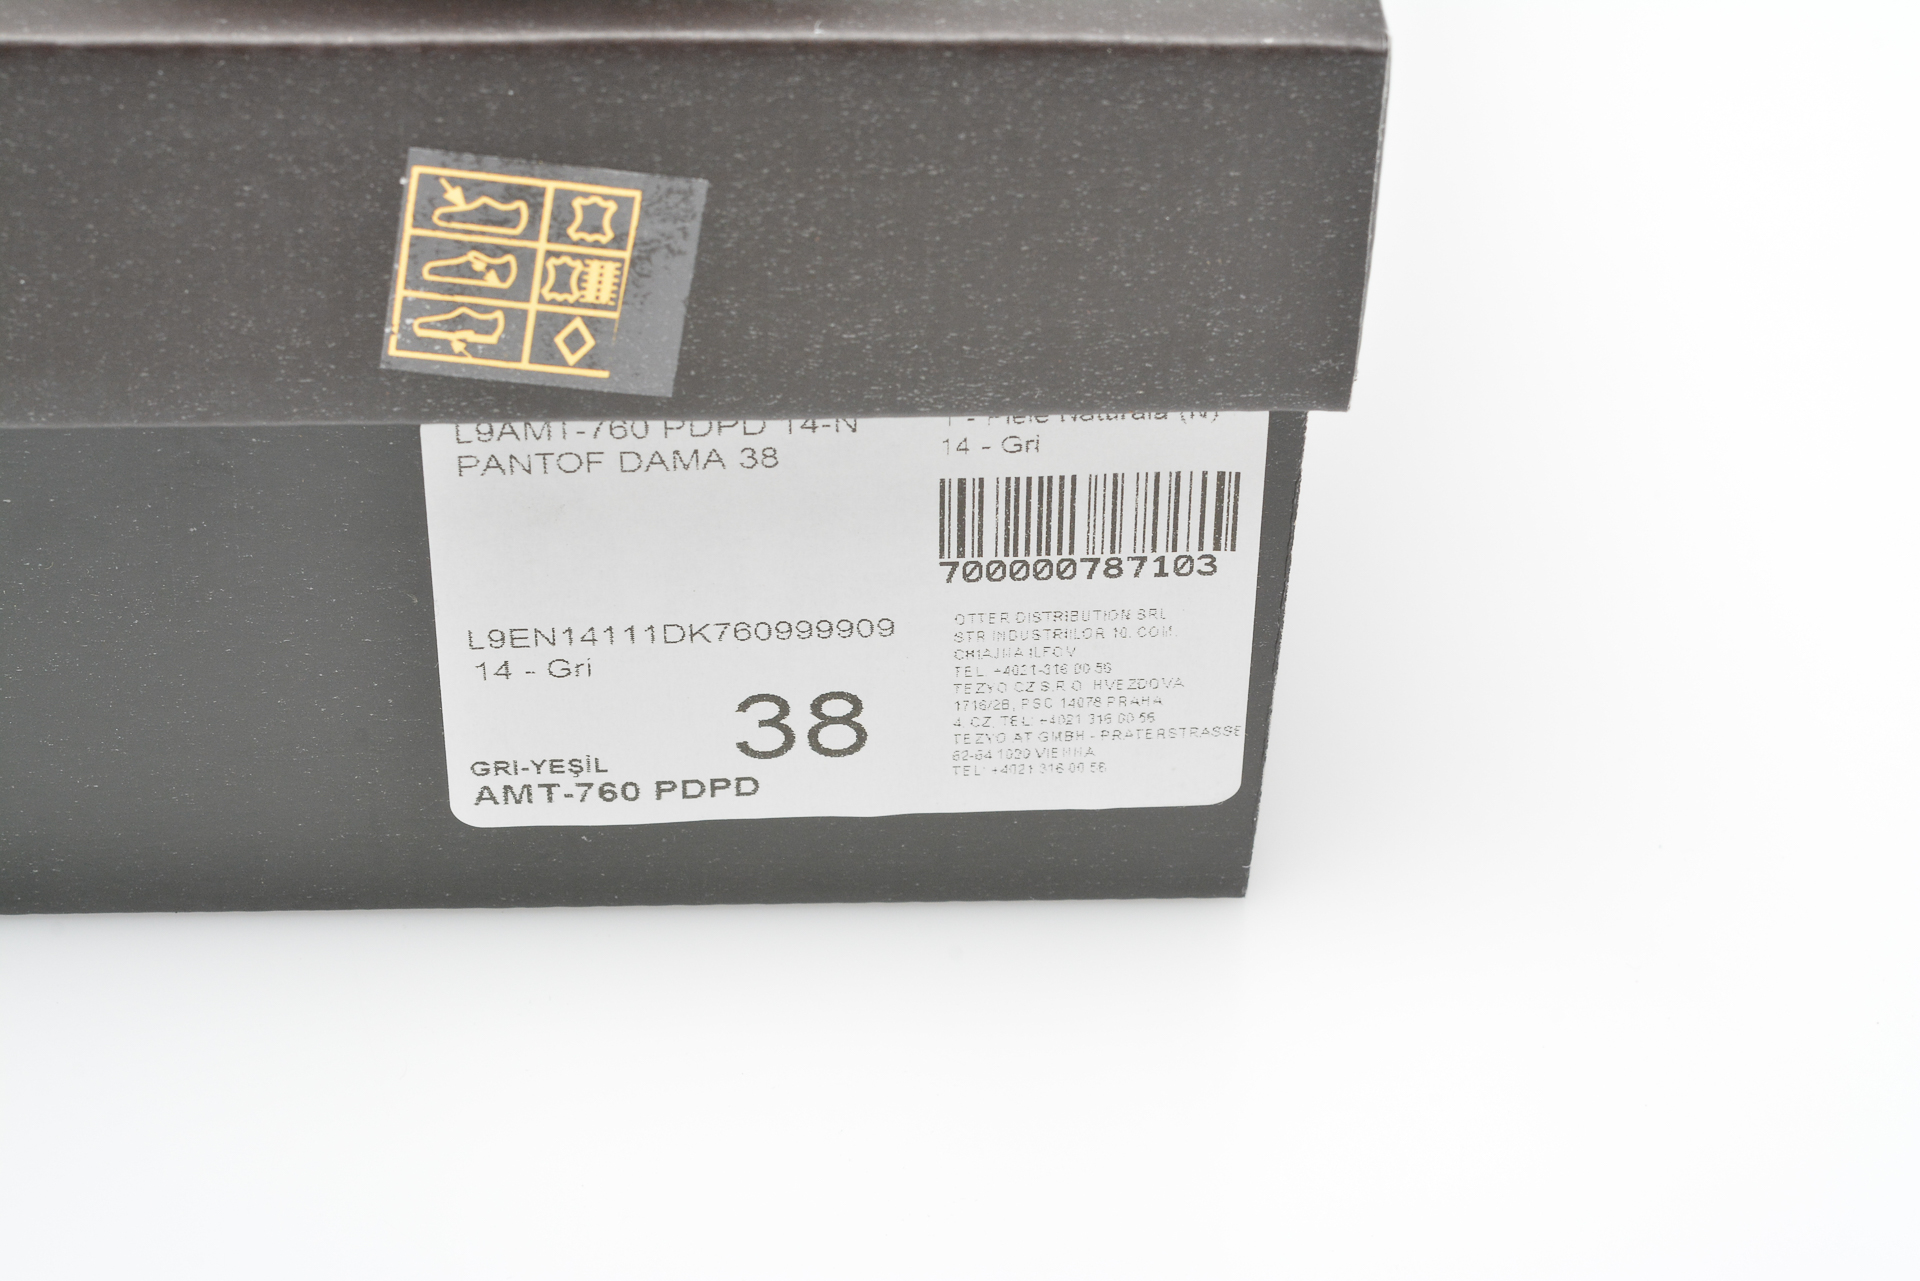 Pantofi sport GRYXX negri, 2176, din material textil si piele naturala Gryxx